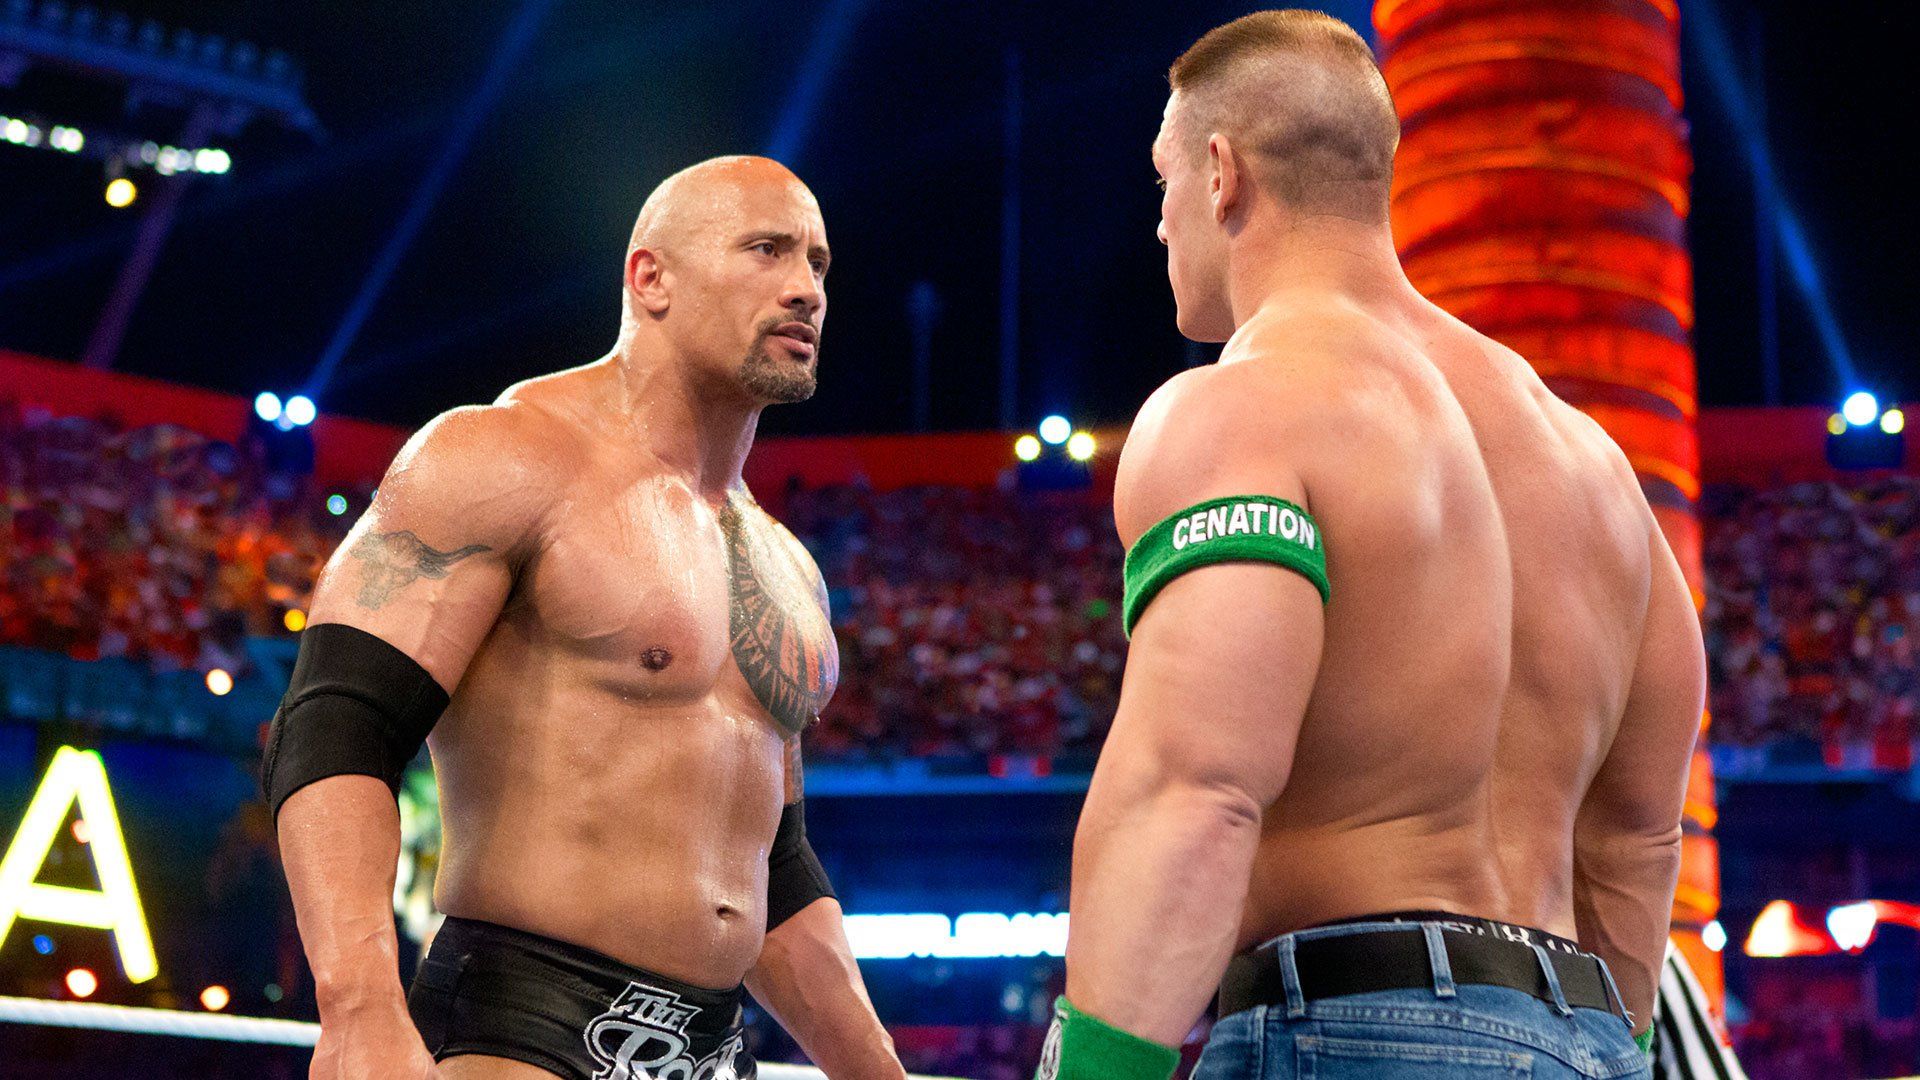 The Rock and John Cena headlined WrestleMania 28